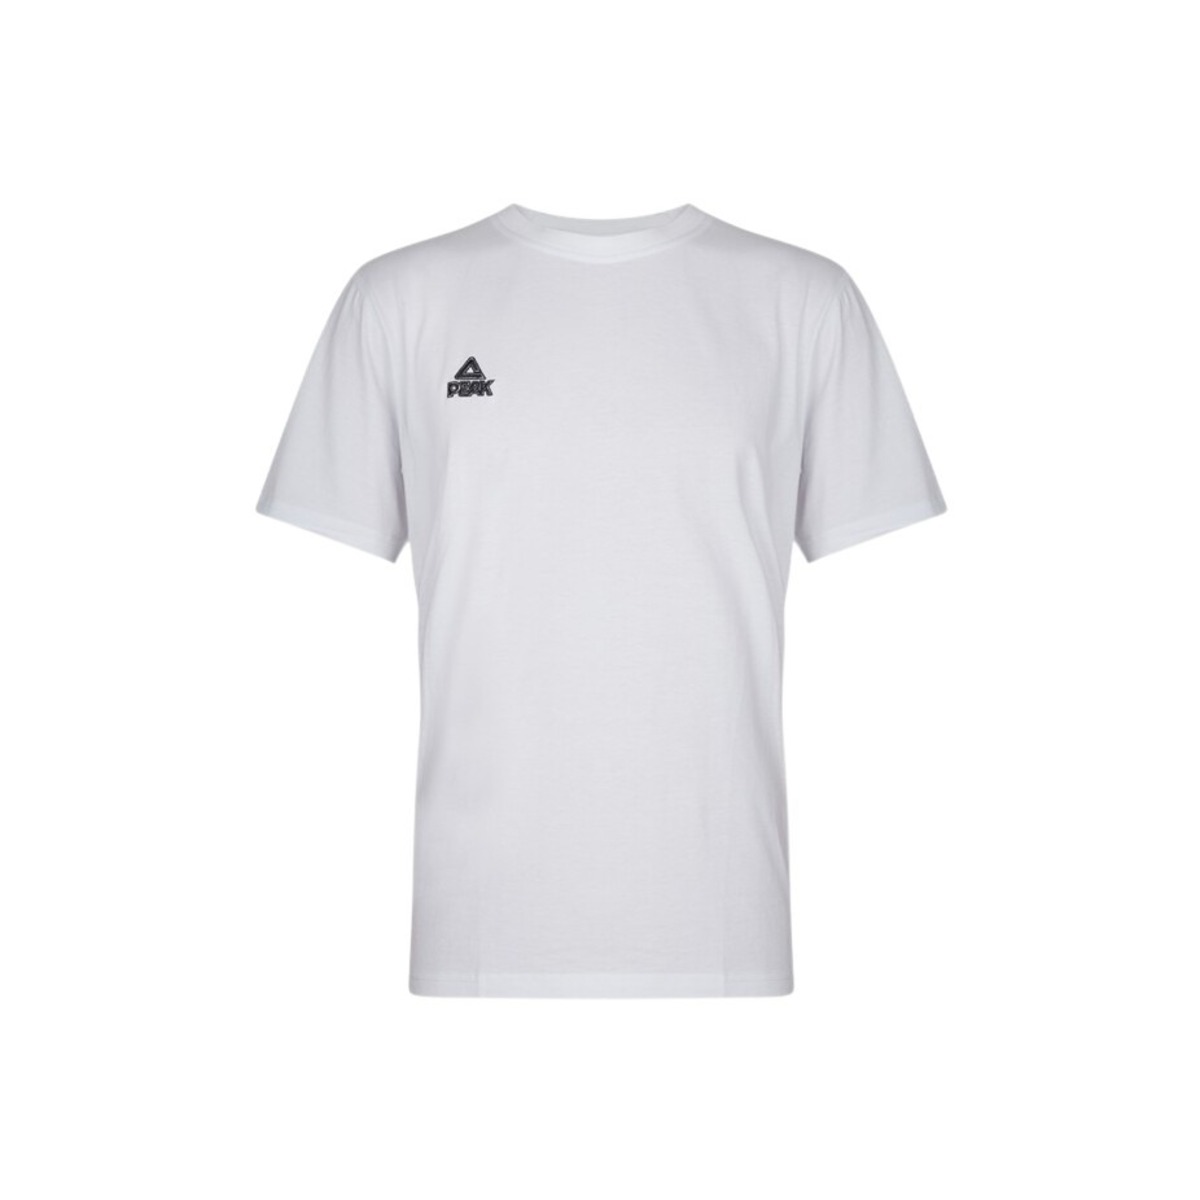 Camiseta Peak Classic - Blanco  MKP